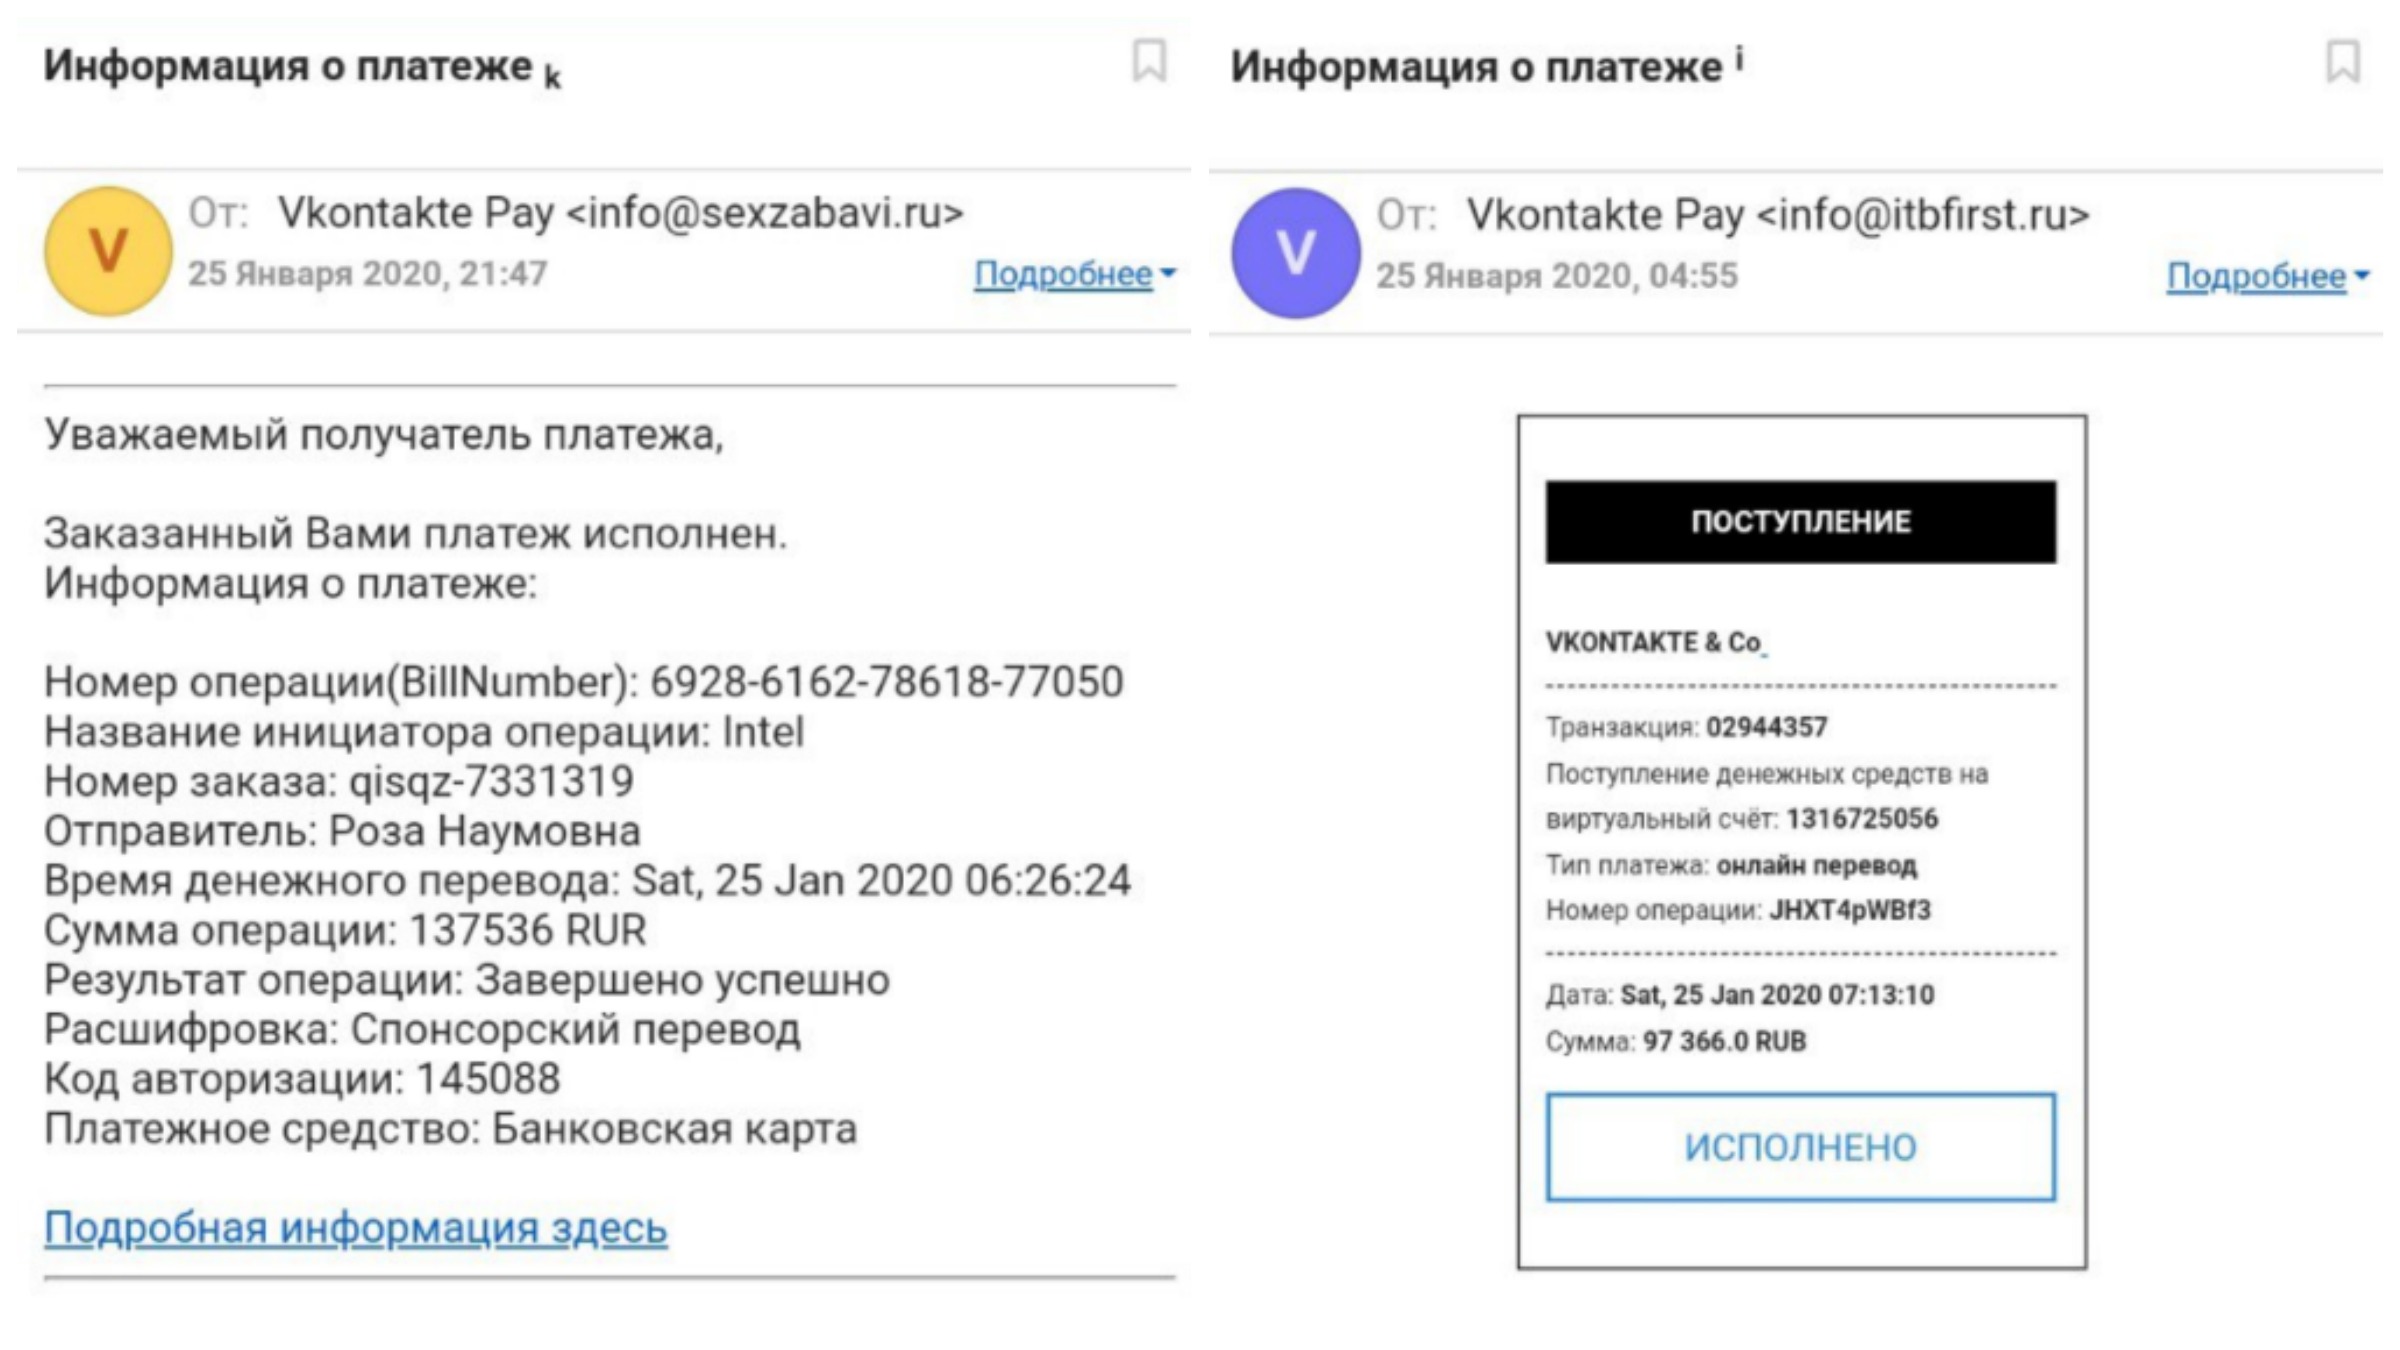 Мошенники подписываются именем Vkontakte Pay